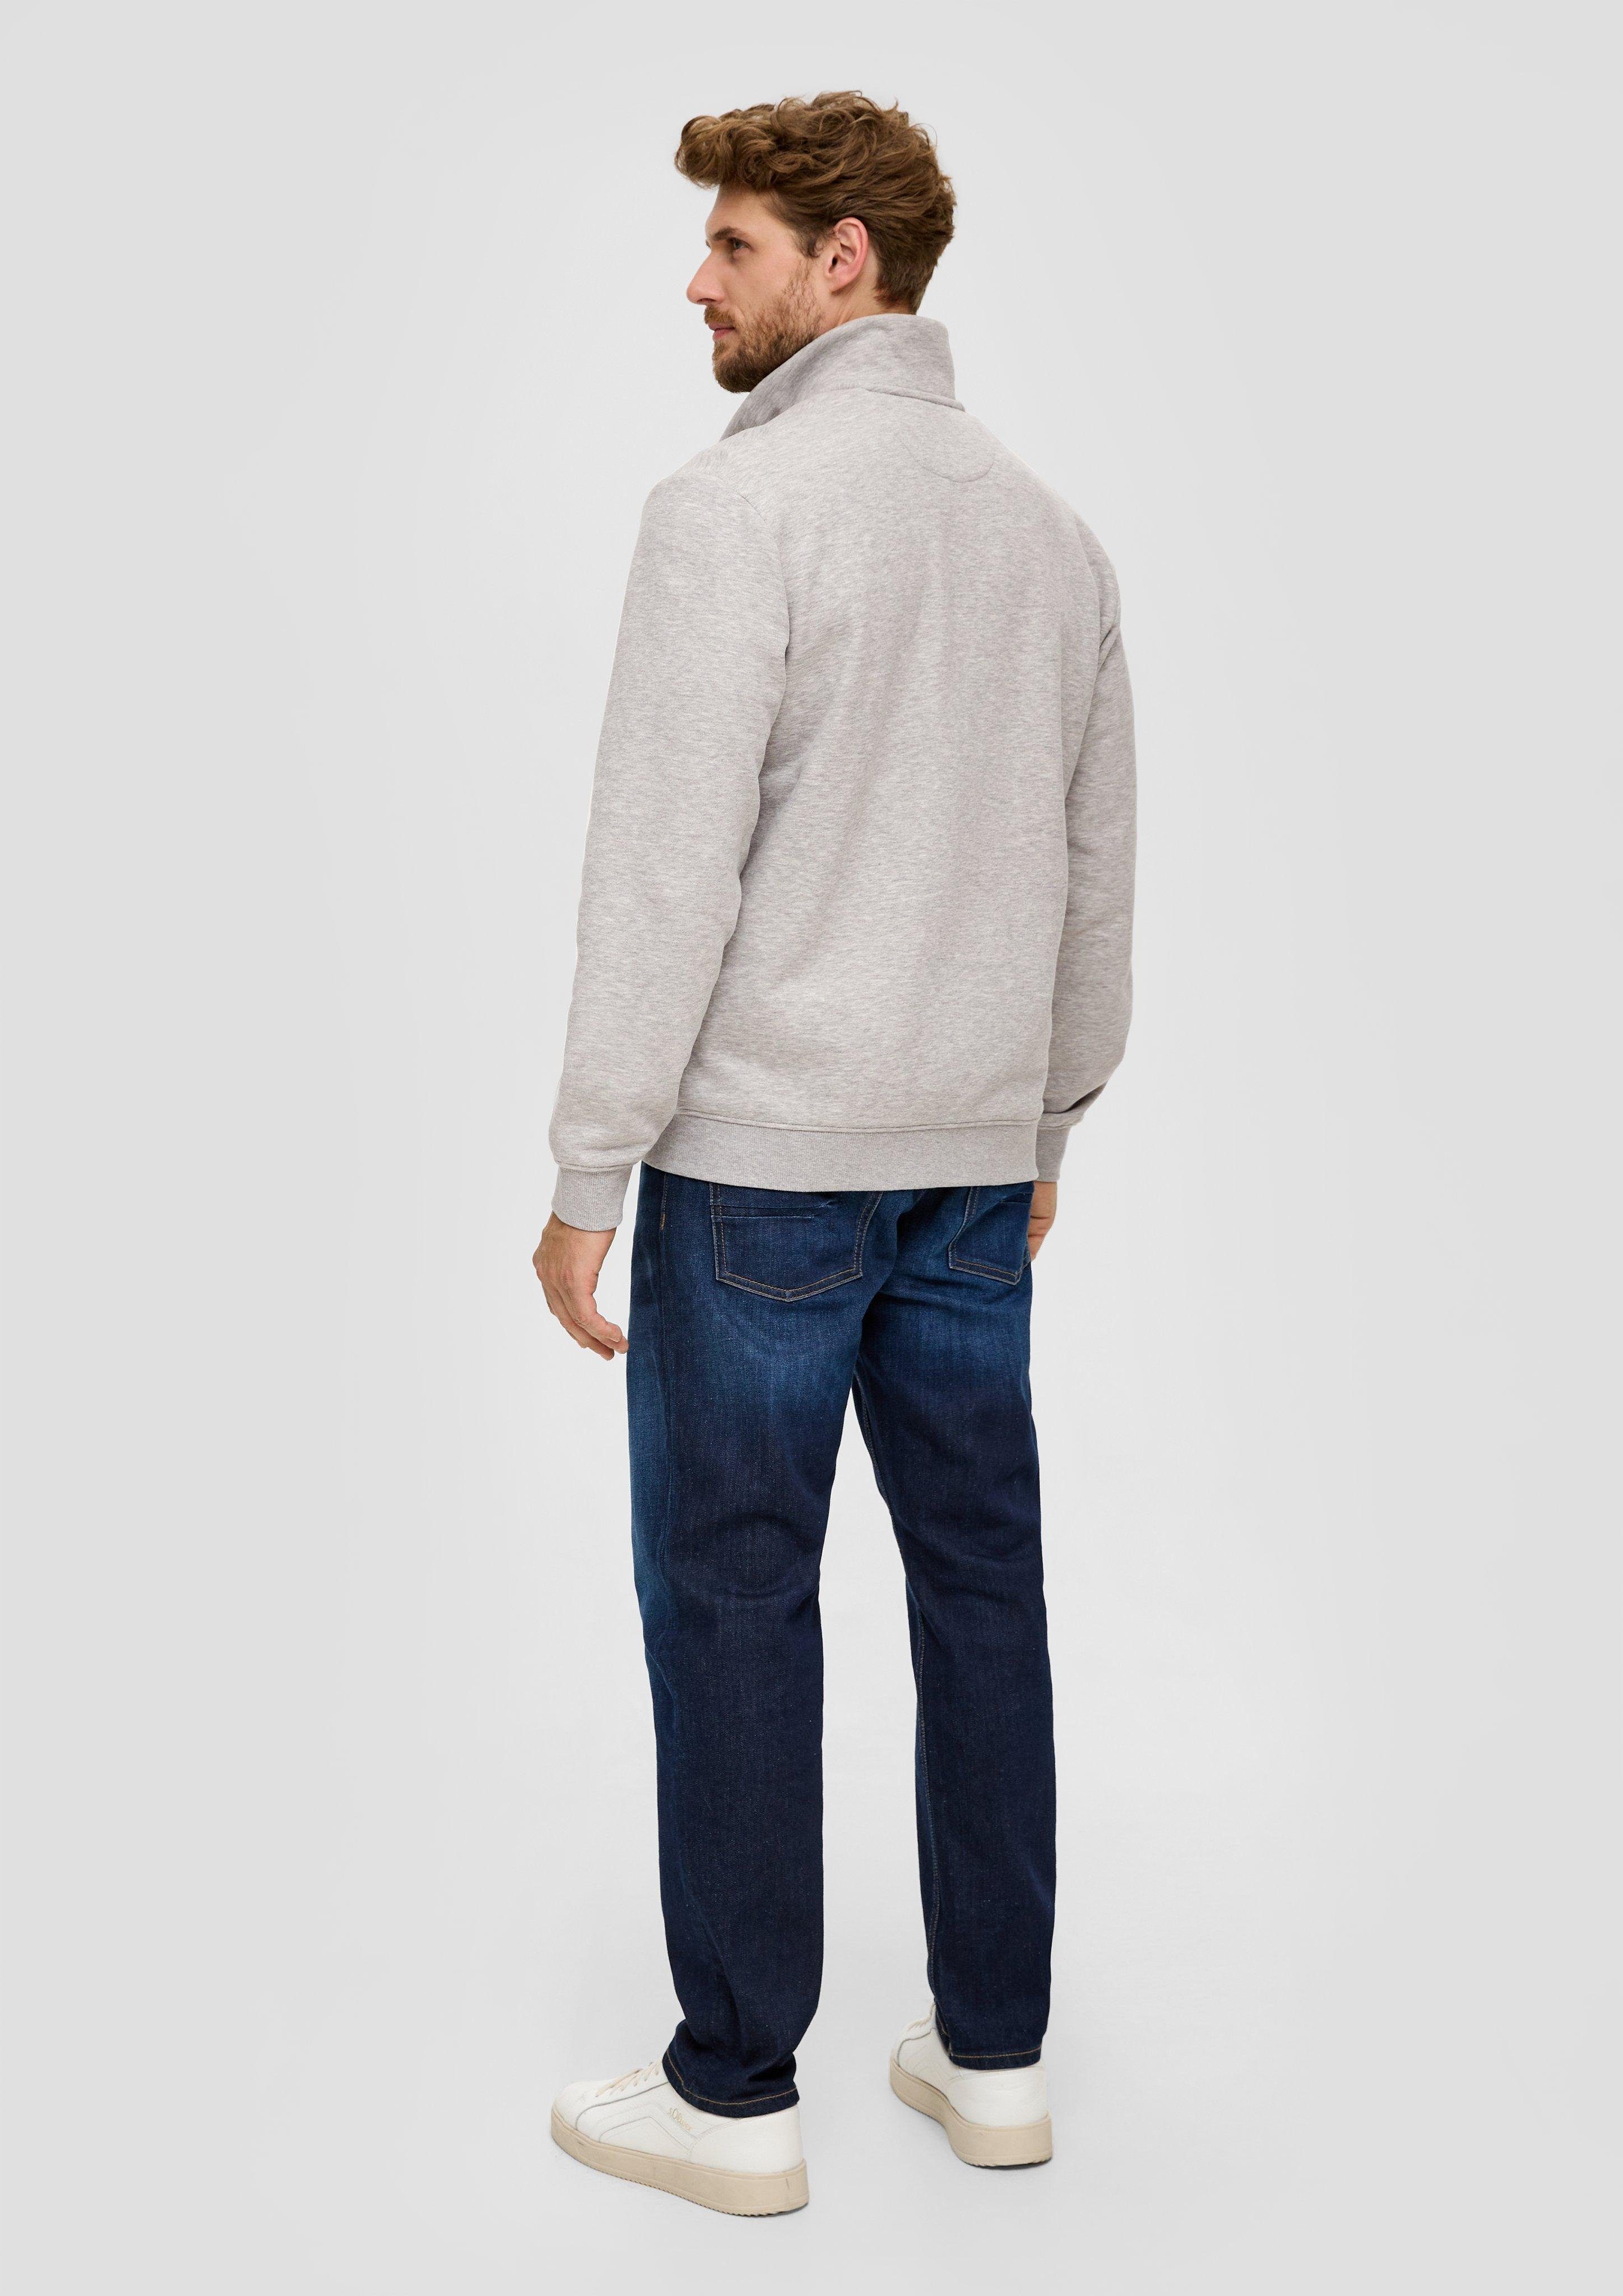 grau Allwetterjacke Sweatshirt-Jacke meliert Stehkragen s.Oliver Logo, Streifen-Detail mit